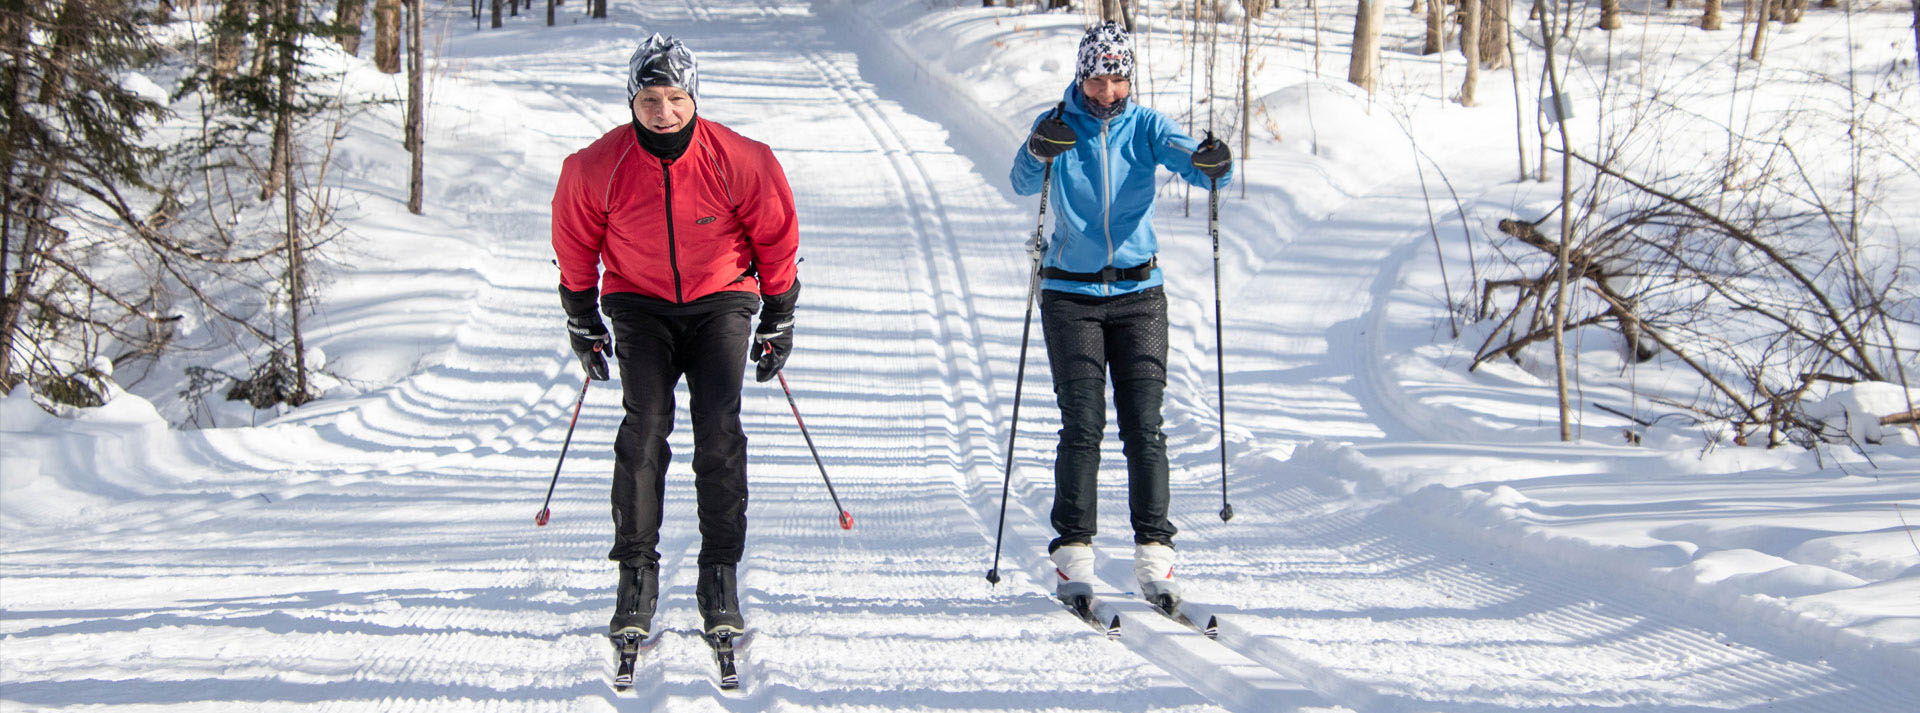 Skieurs au Centre de ski Les sentiers de la Balade à Lévis